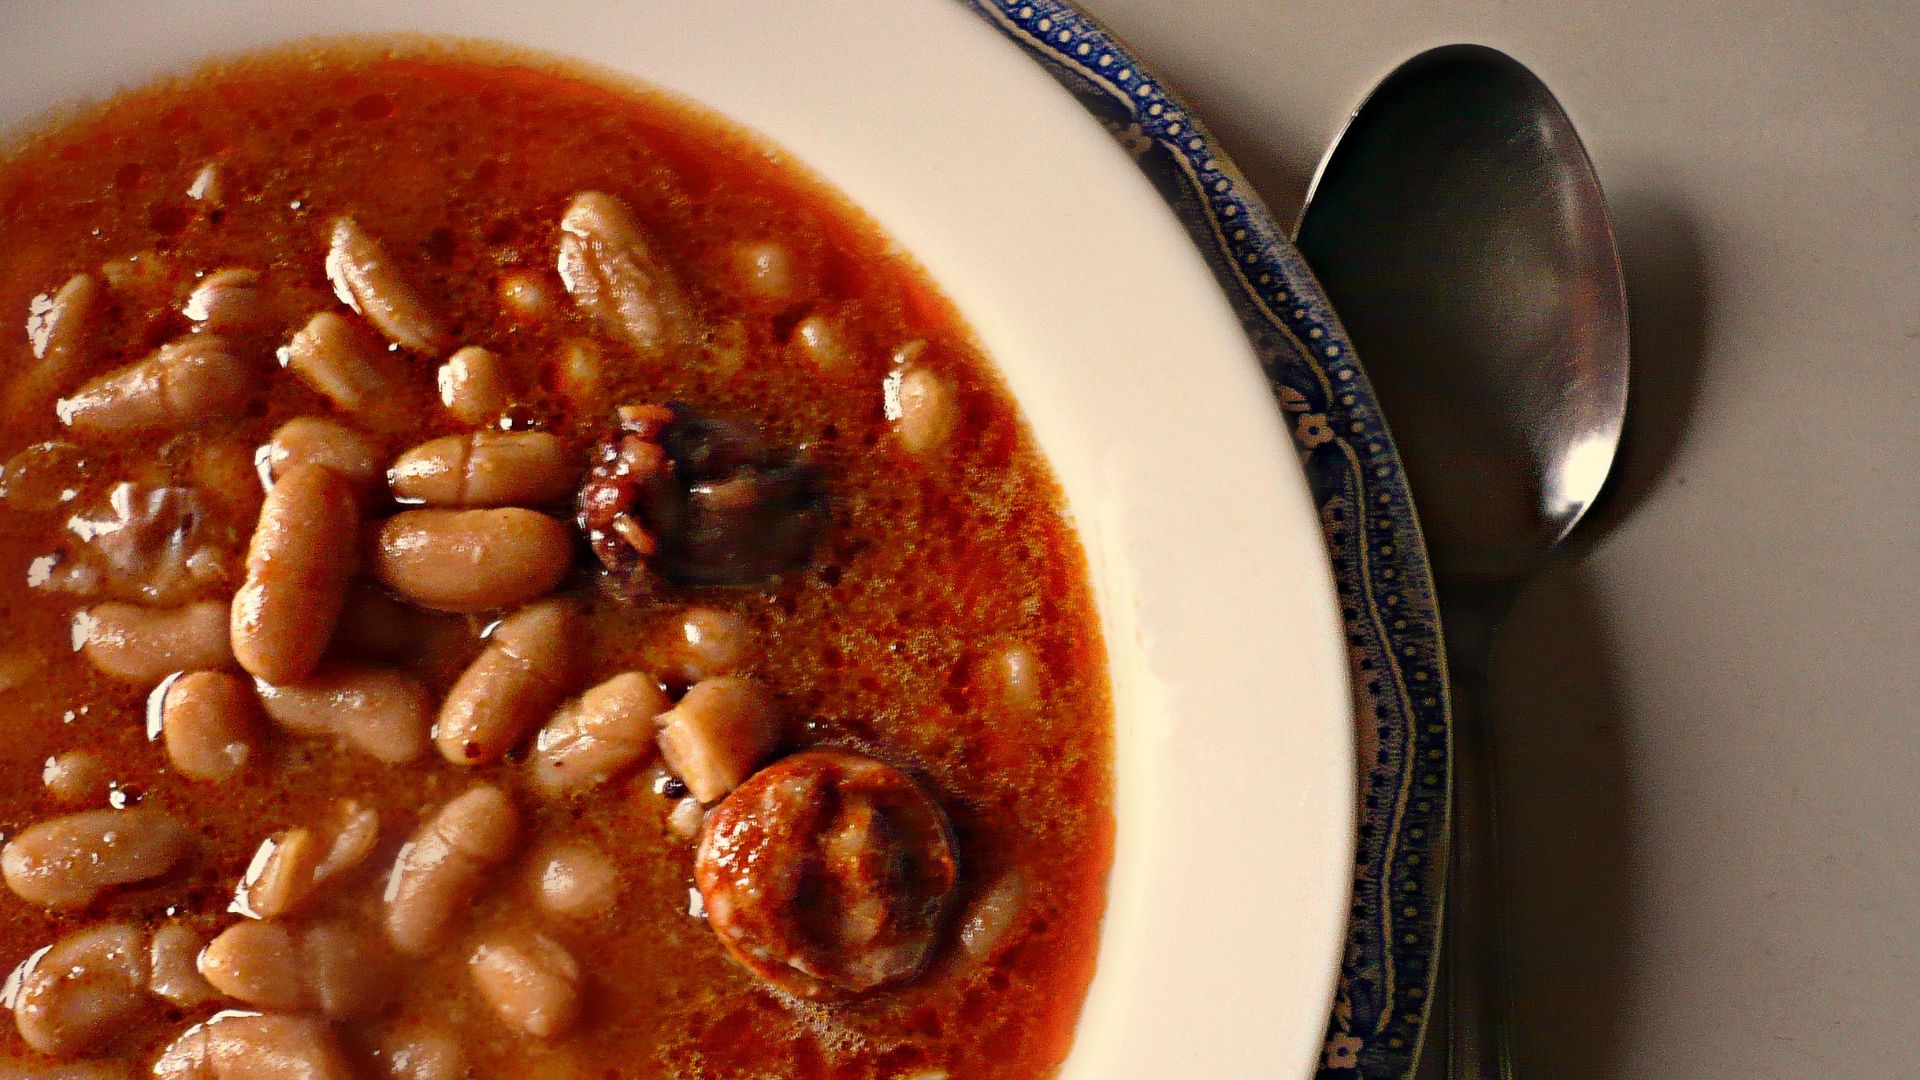 La primera receta documentada de fabada asturiana, escrita por Emilia Pardo Bazán: “Si el asturiano fuese rey, comería morcilla con fabes”